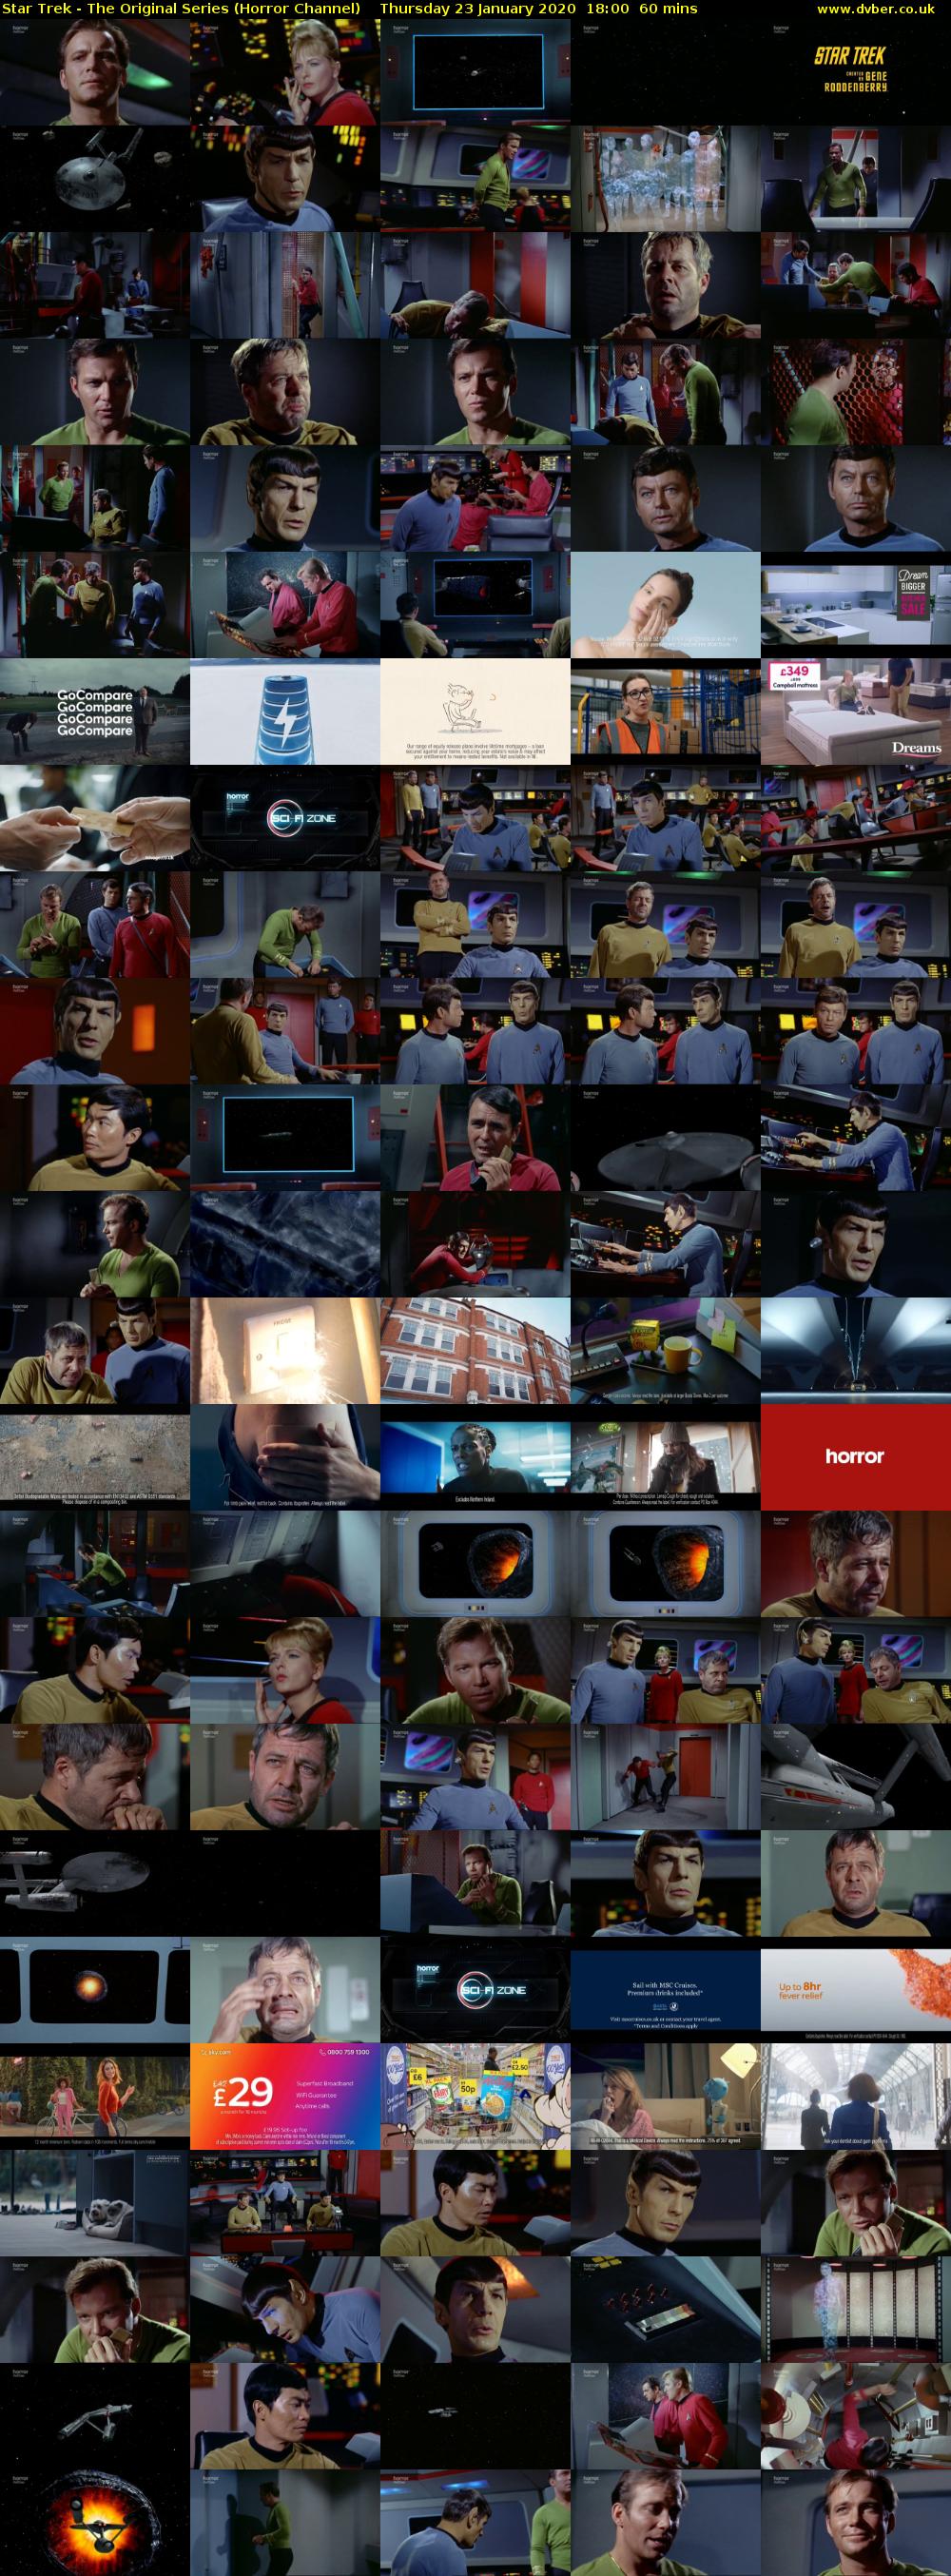 Star Trek - The Original Series (Horror Channel) Thursday 23 January 2020 18:00 - 19:00